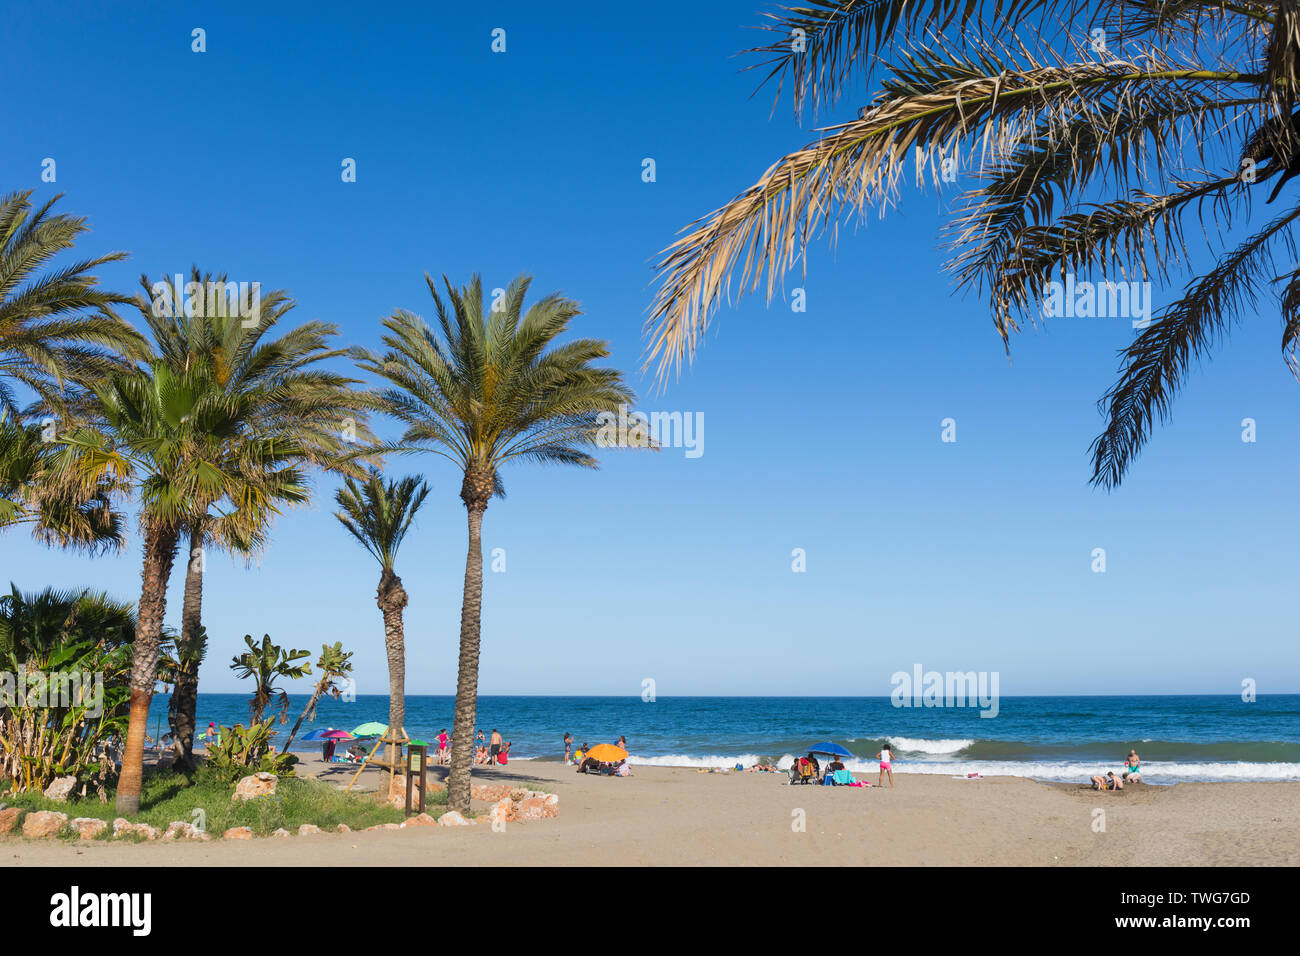 El Bombo beach, La Cala de Mijas, Costa del Sol, Malaga Province, Andalusia, southern Spain. Stock Photo